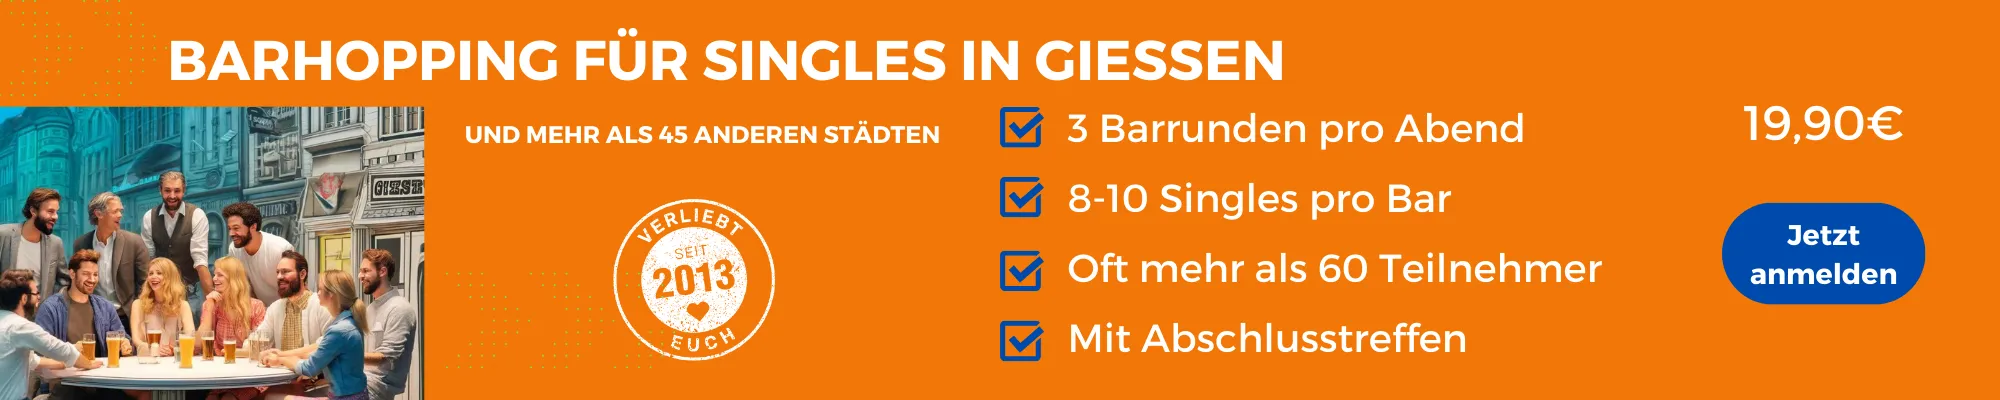 Face to Face Giessen: Barhopping für Singles in Giessen